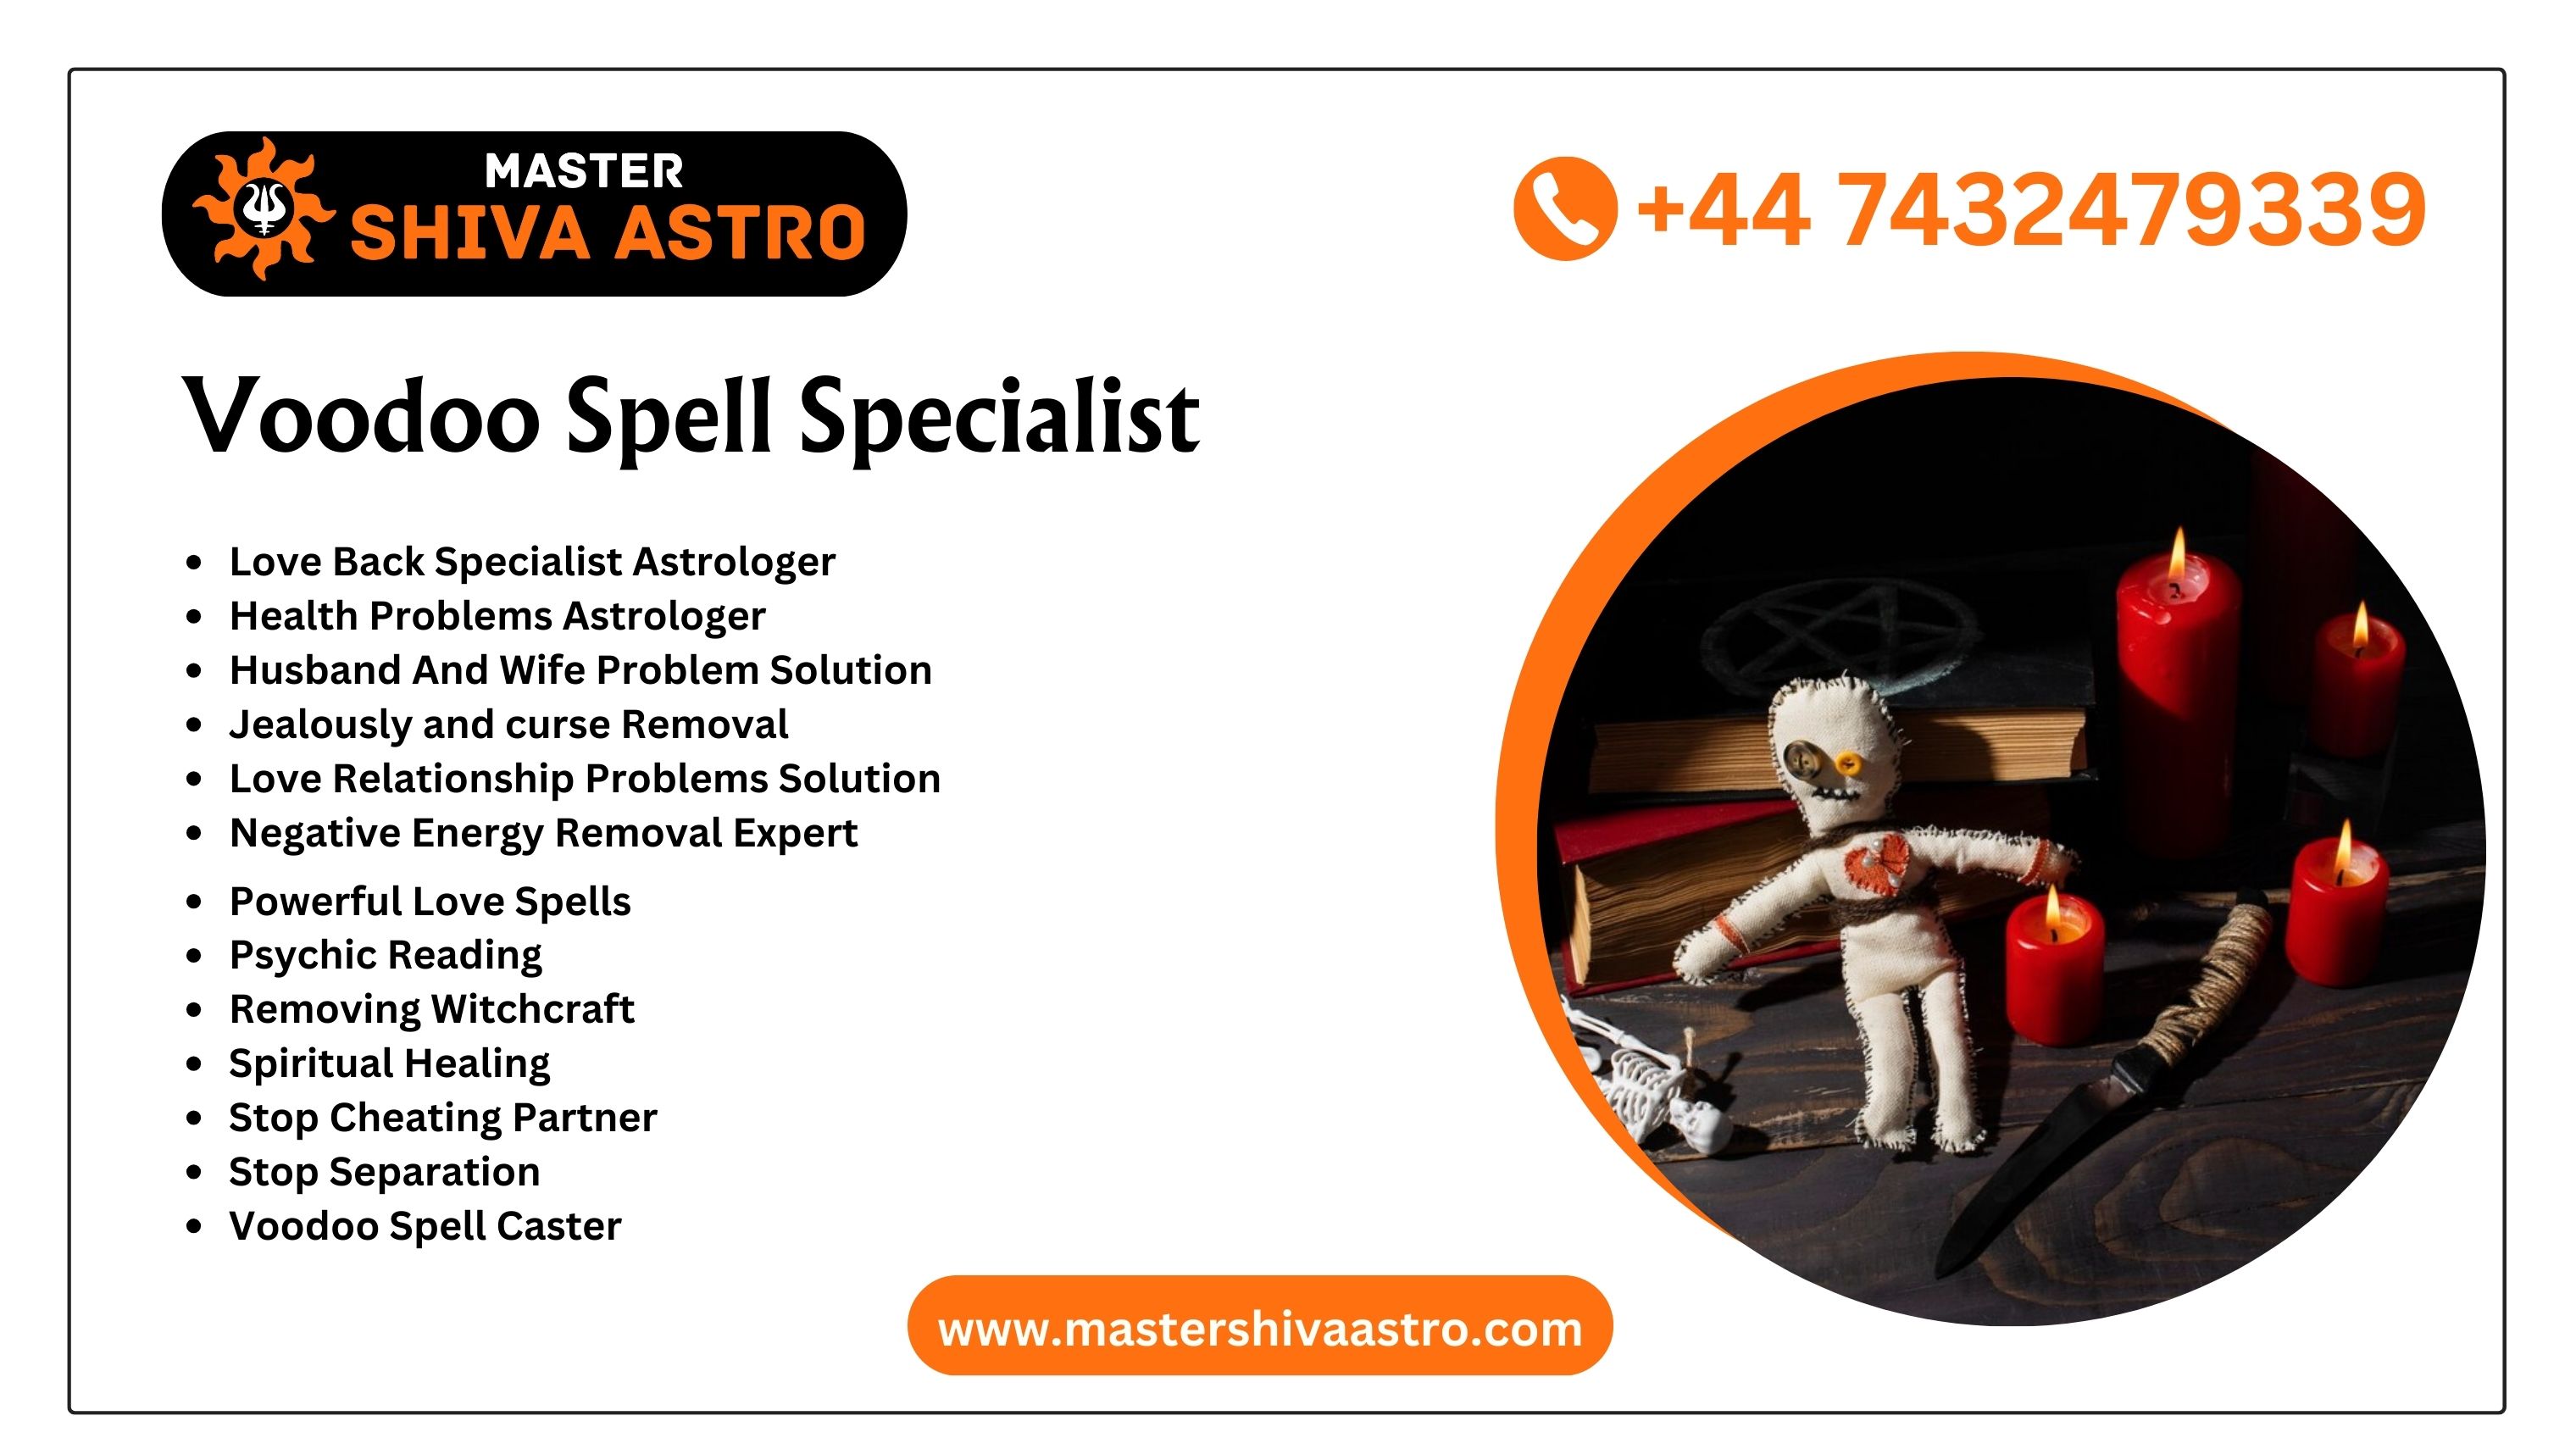 Voodoo Spell Specialist - Master Shiva